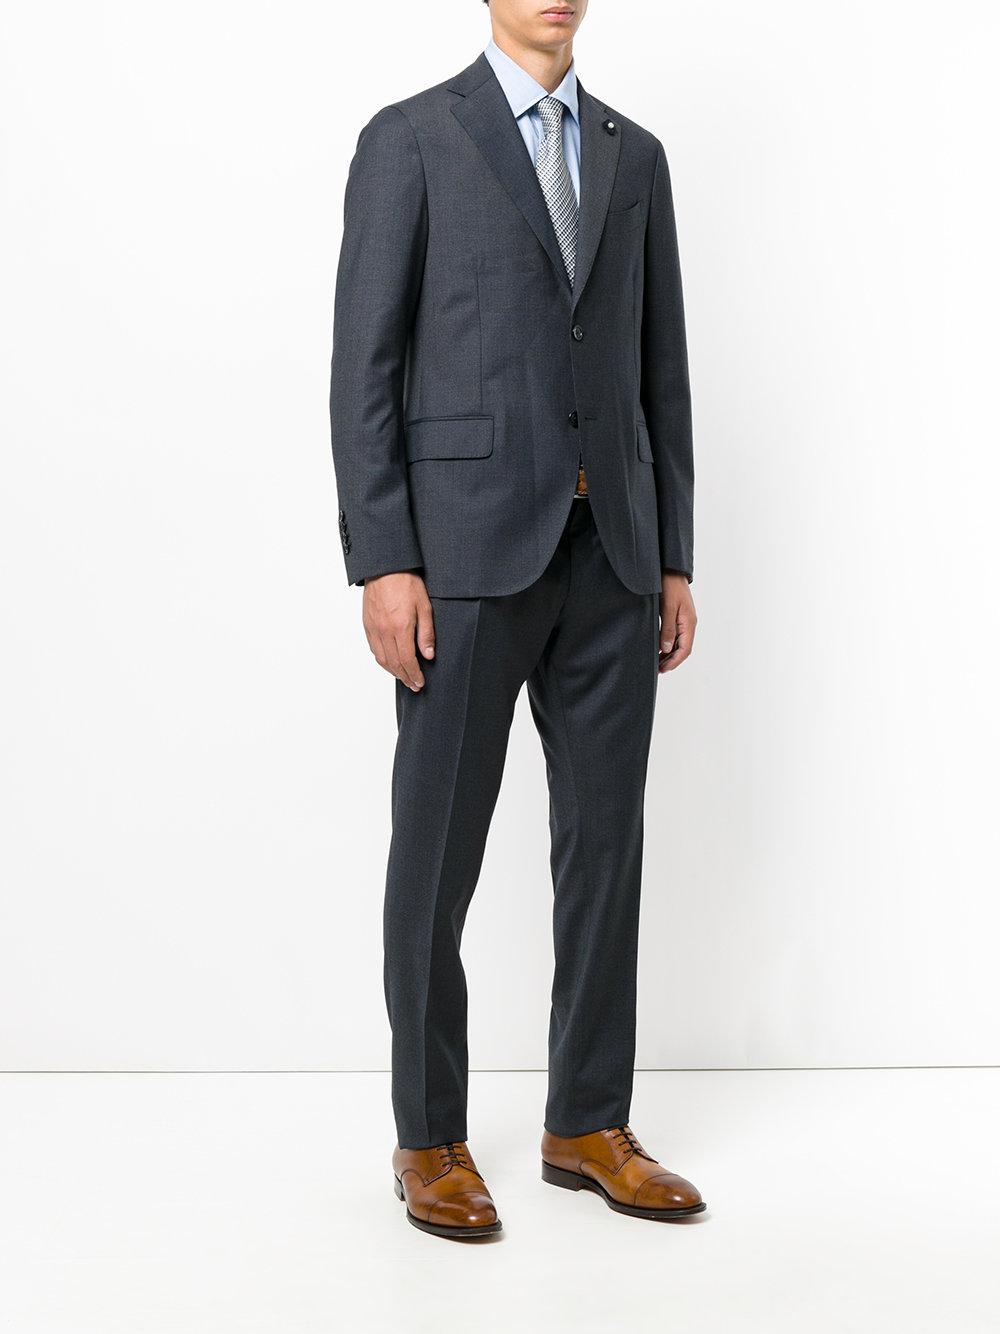 Lyst - Lardini Classic Suit in Gray for Men